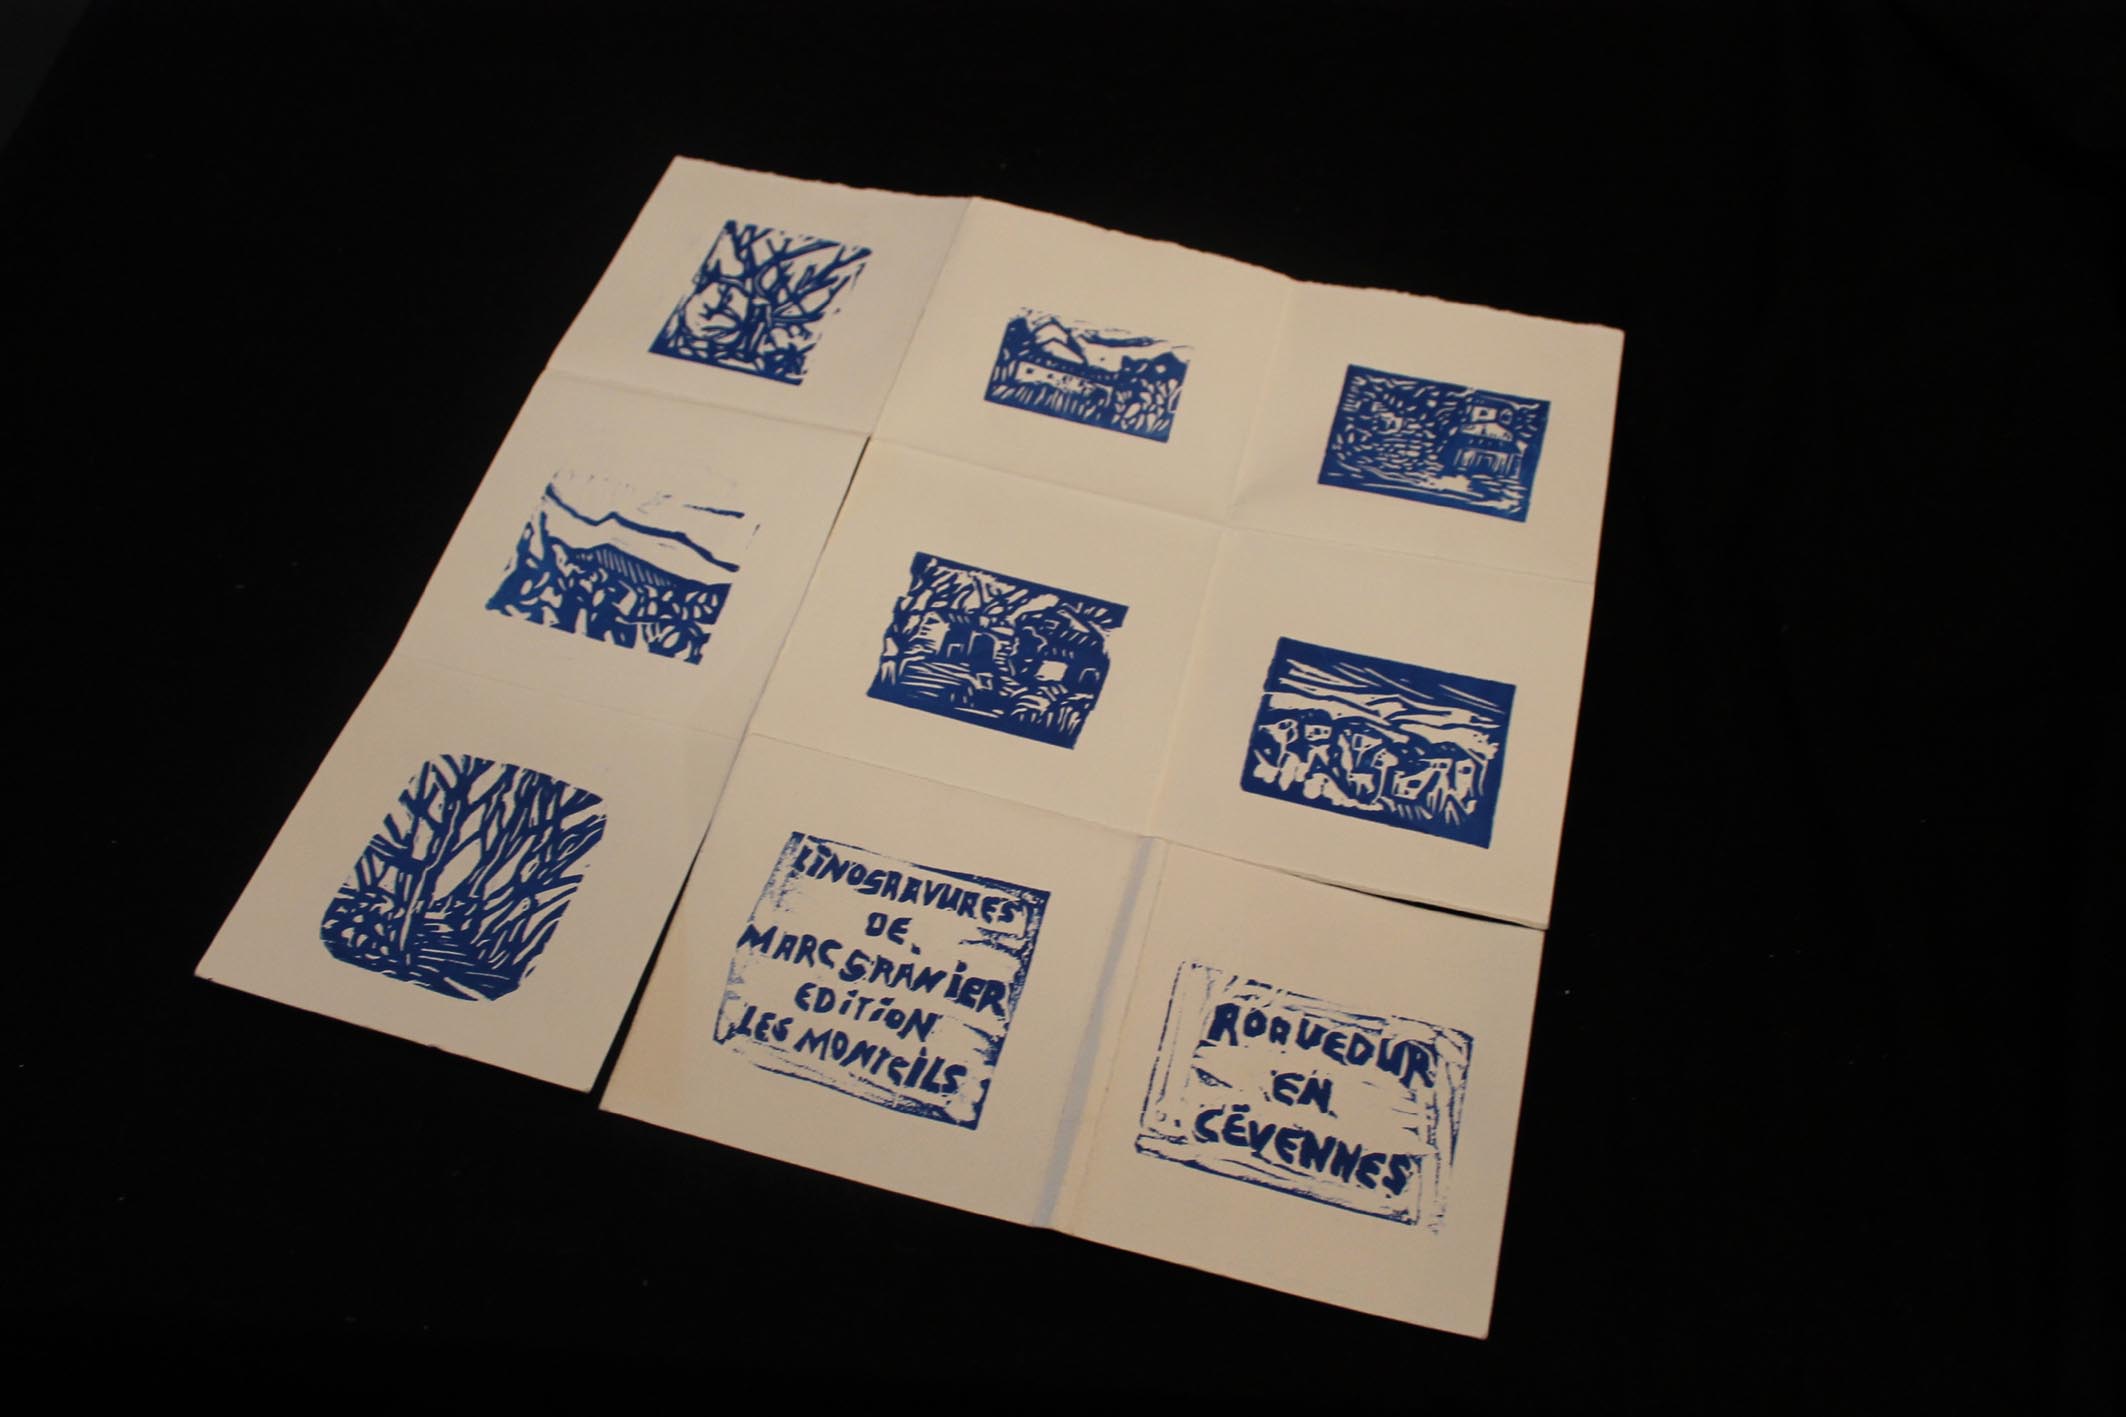 Edition de 16 linogravures de Marc Granier sur papier Hahnemehle 300 gr  imprimé sur les presses artisanales des Monteils en Cévennes en mars 2011 (puisé)